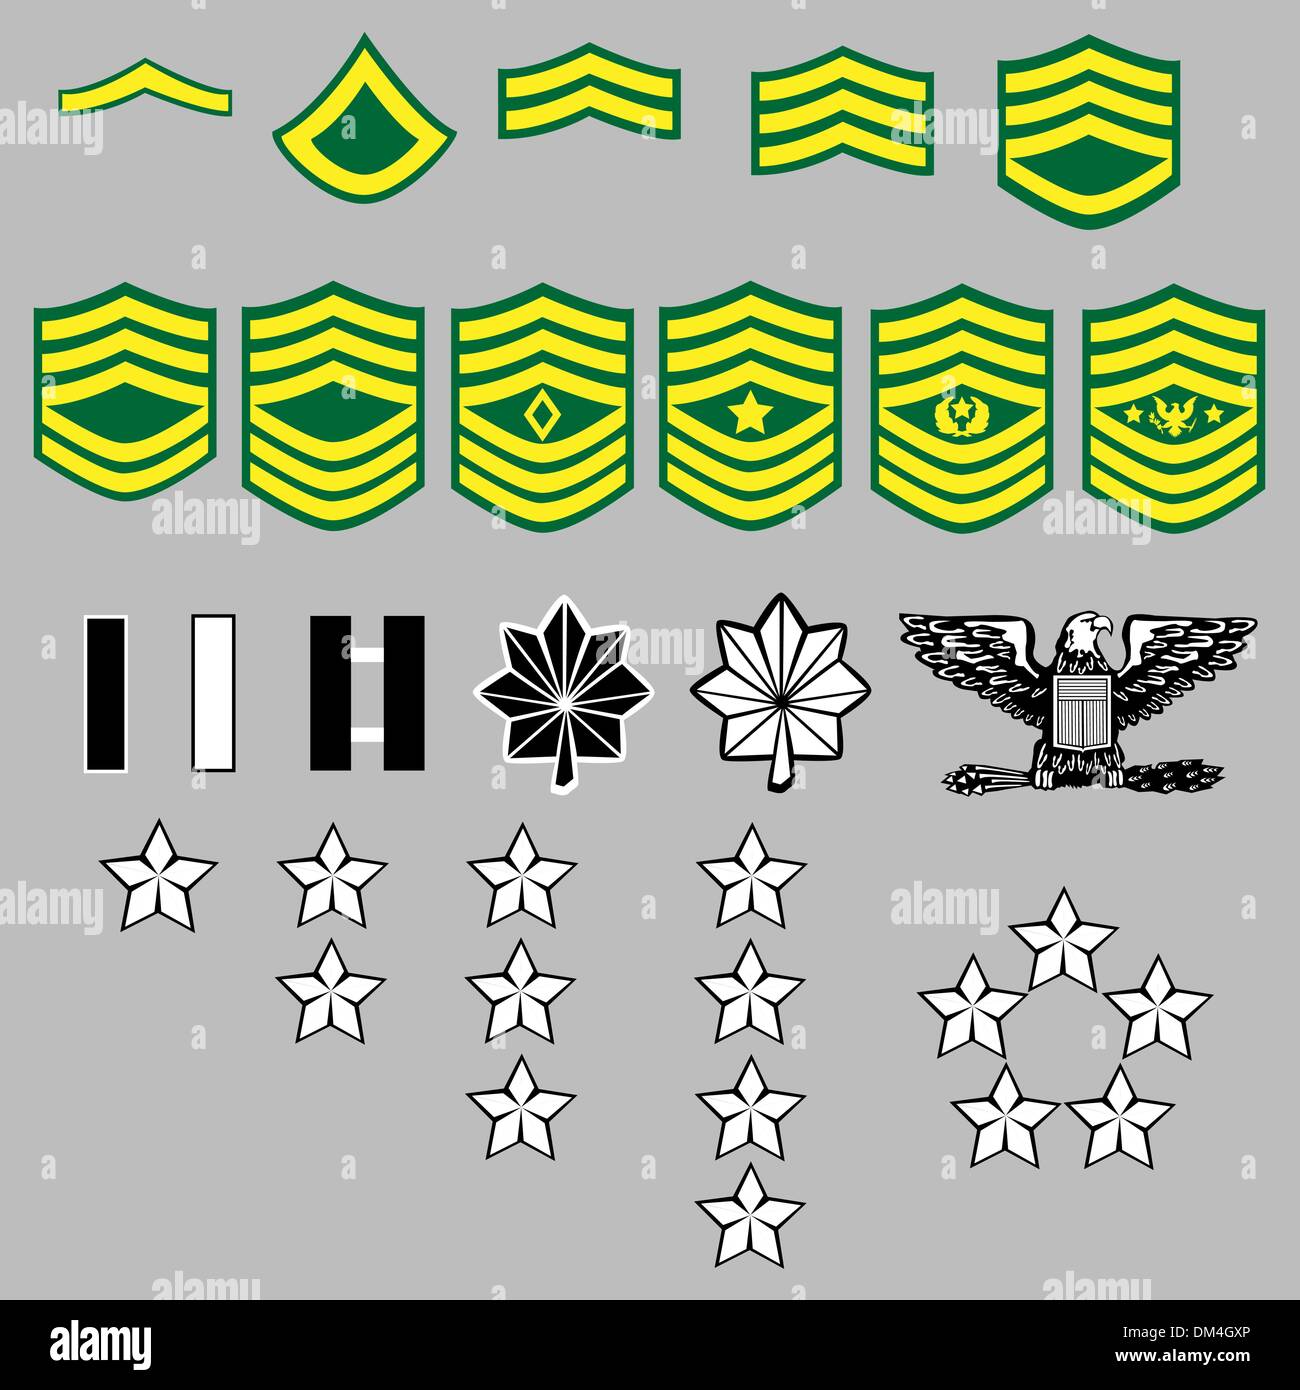 US Army Rank Insignia Illustrazione Vettoriale